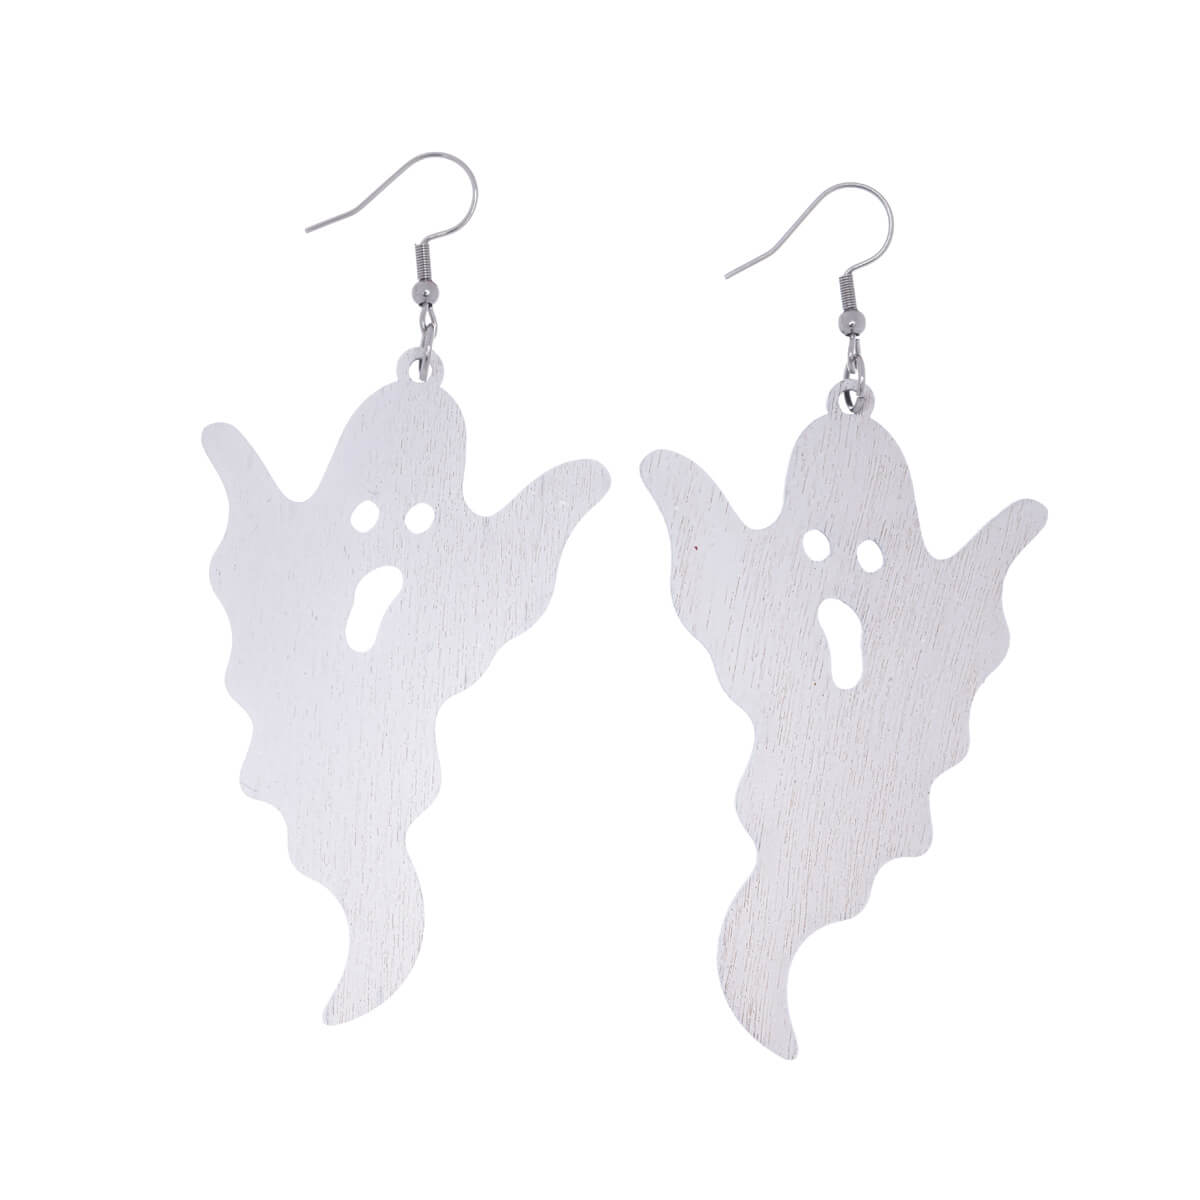 Wooden ghost earrings - Made in Finland (Steel 316L)